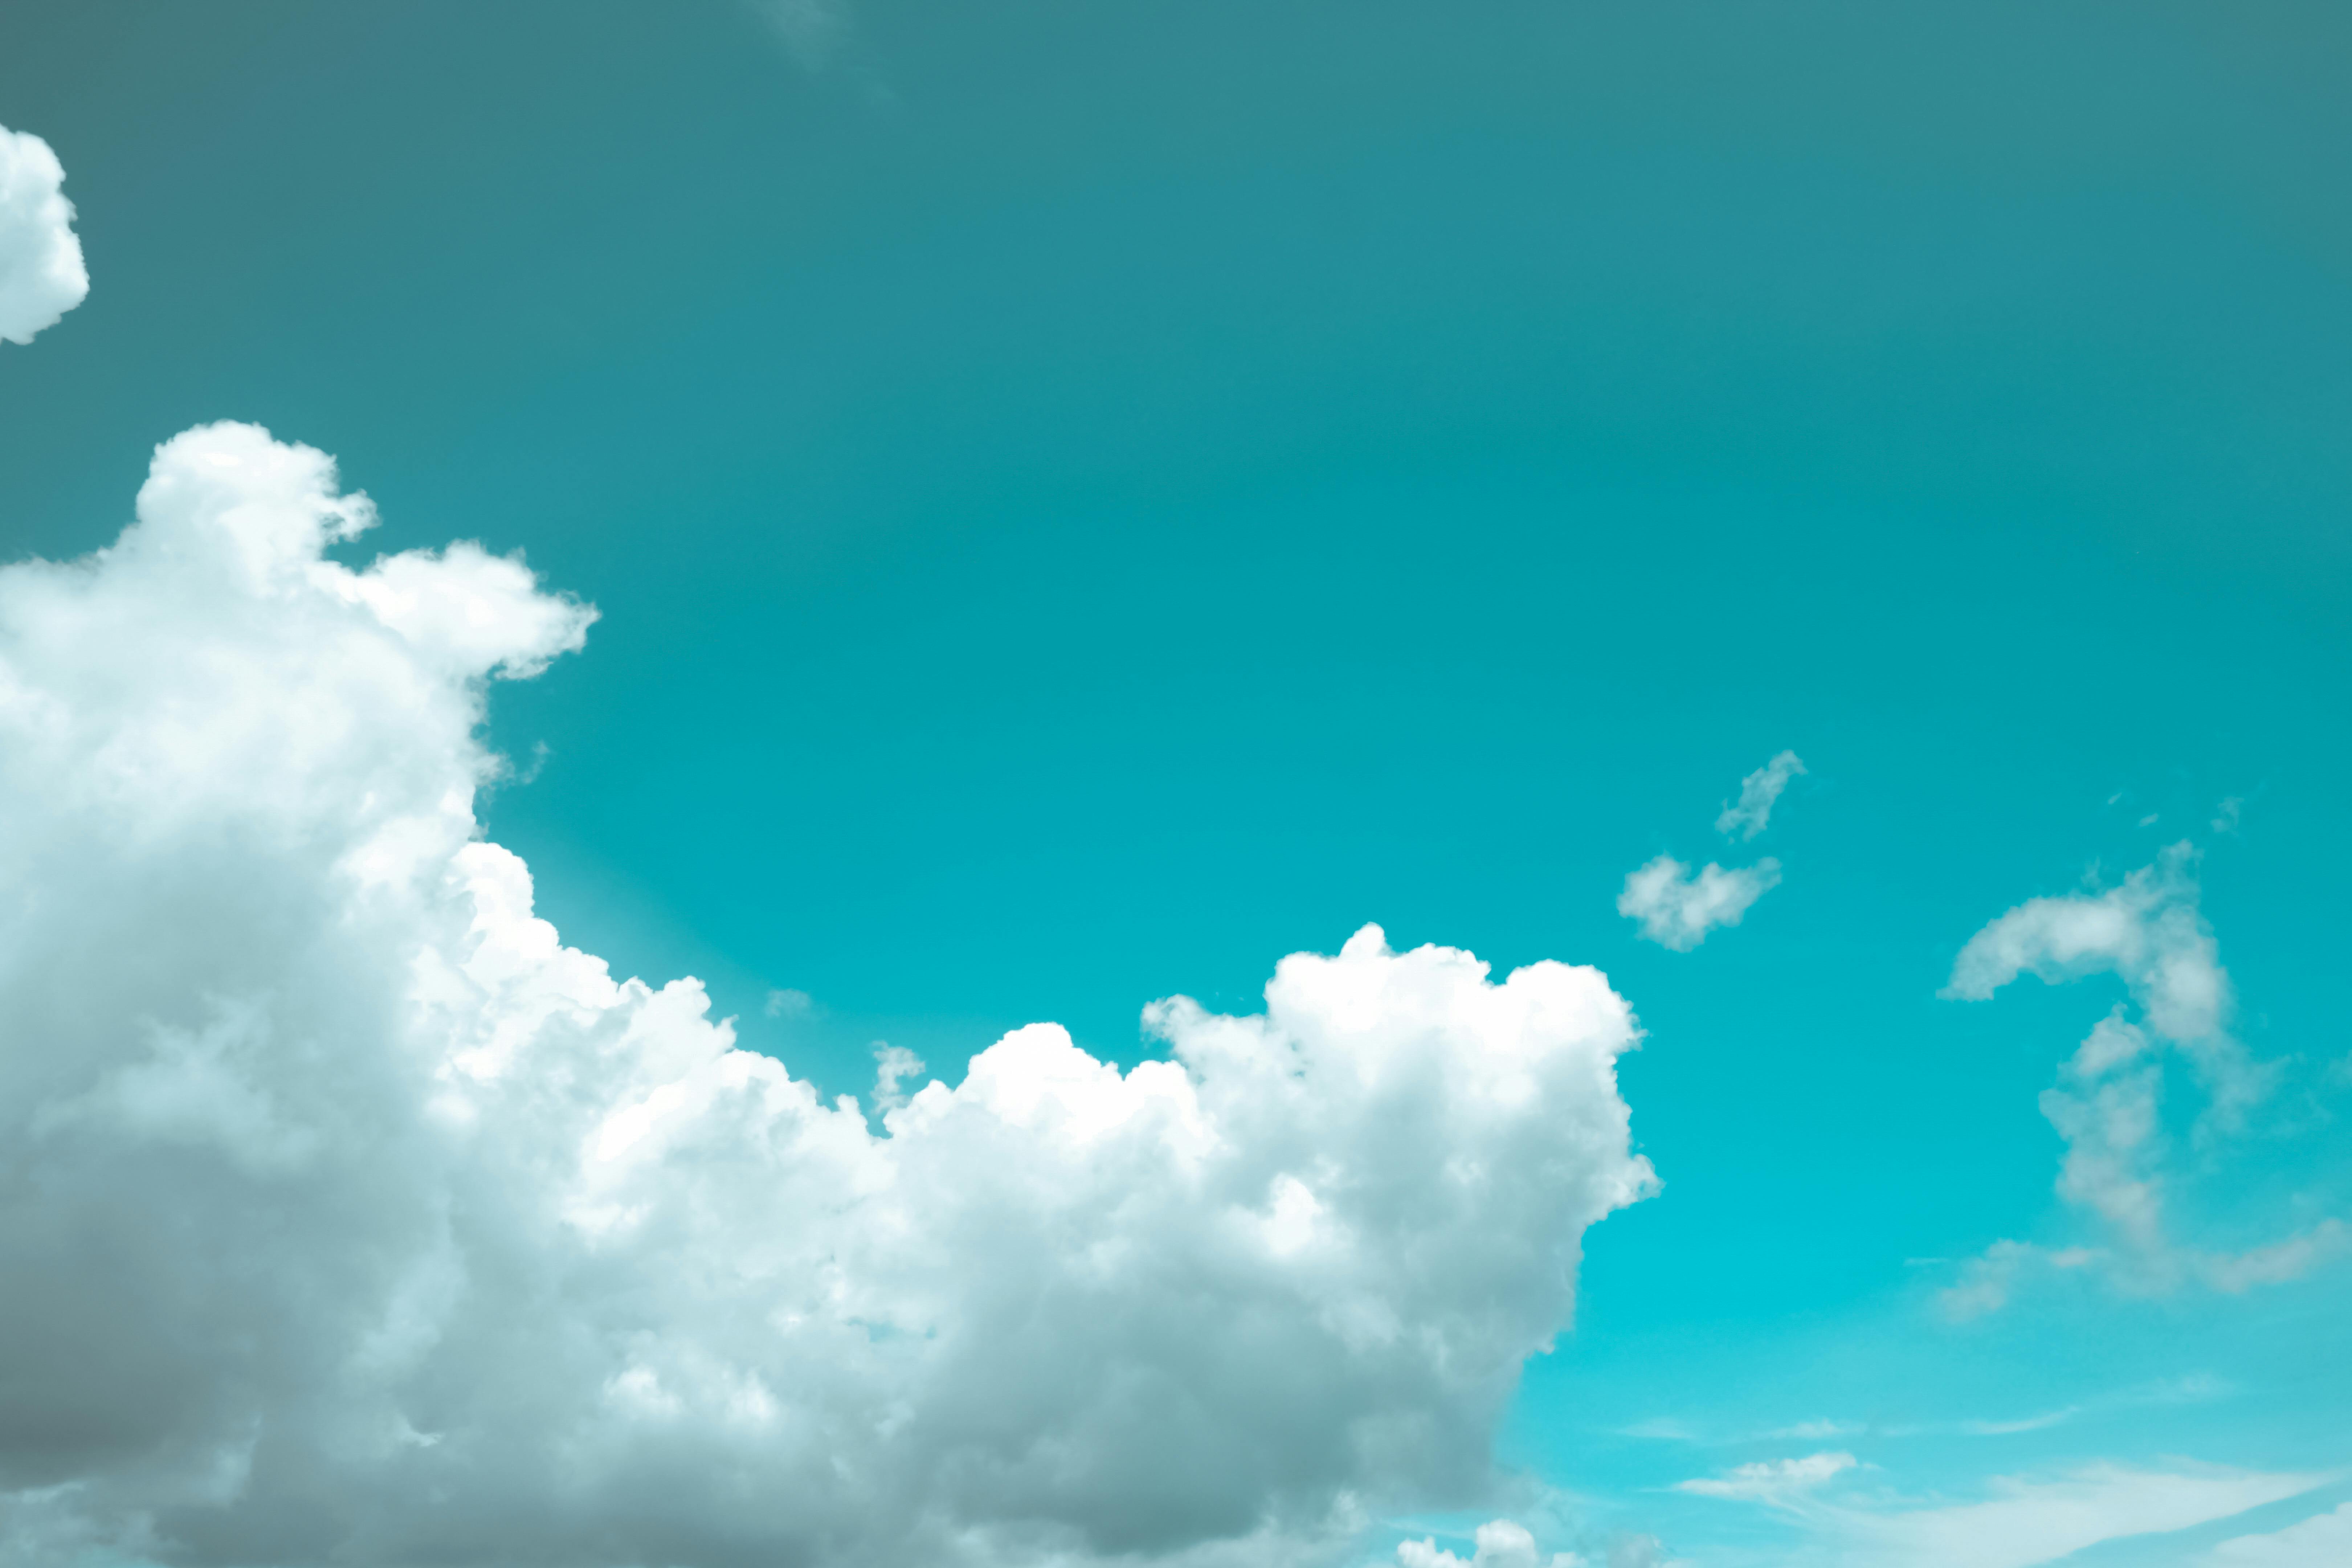 Mây trắng trên nền bầu trời xanh – Ảnh miễn phí: Với bầu trời xanh và những đám mây trắng như bông tuyết, bạn sẽ không thể cưỡng lại được sức hấp dẫn của những bức ảnh miễn phí này. Truy cập ngay để tải về và sử dụng cho các dự án thiết kế của bạn!